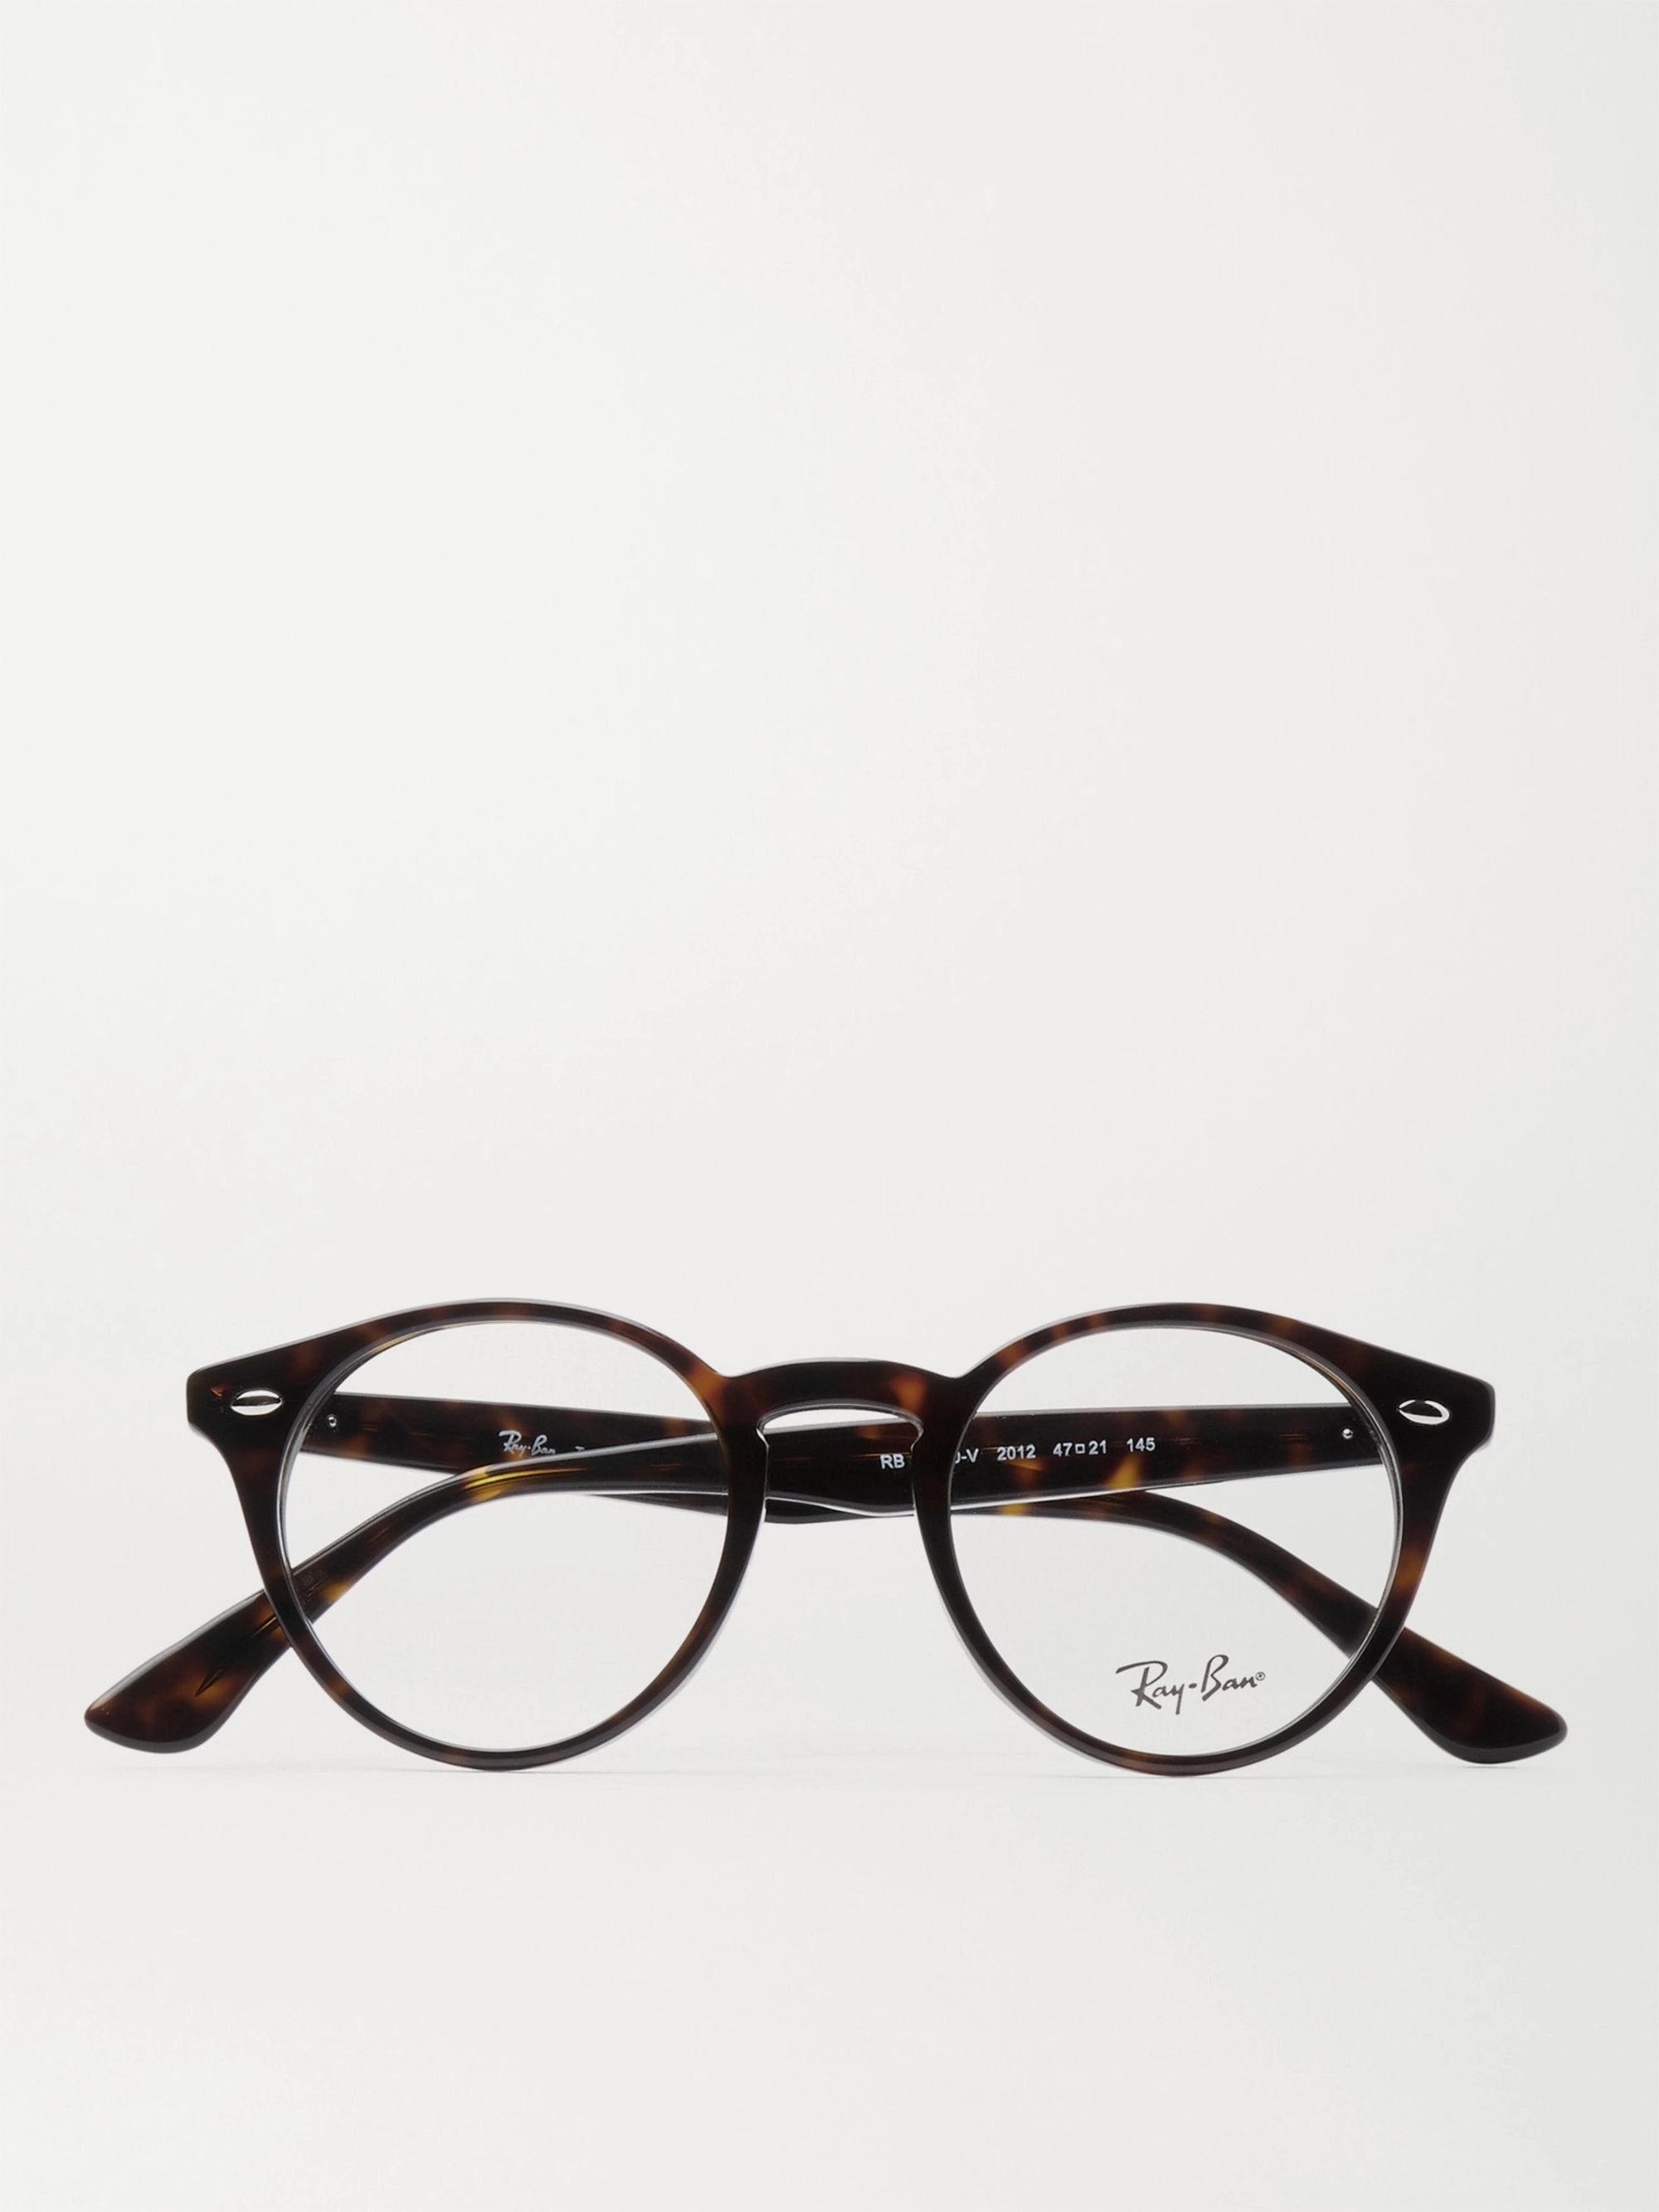 glasses frames